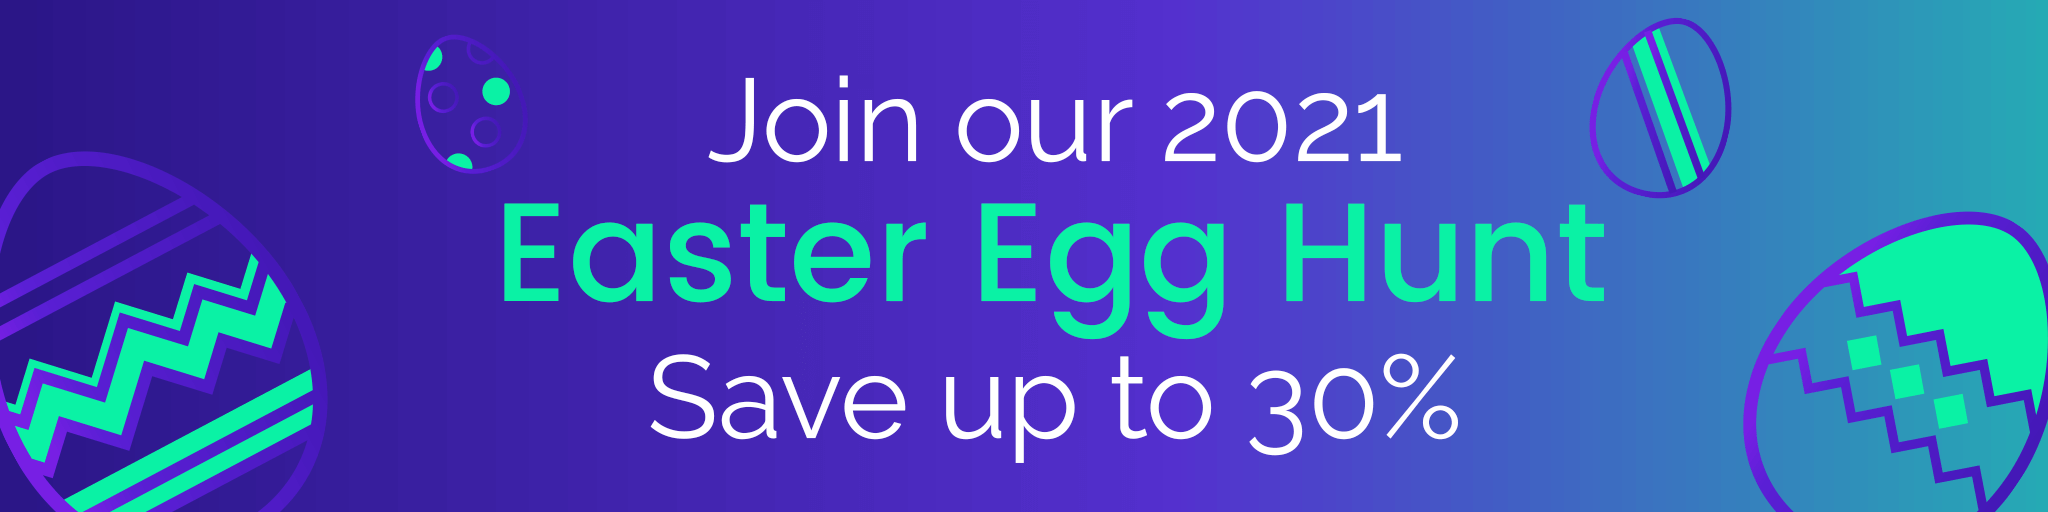 Divi Engine 2021 Easter Egg Hunt